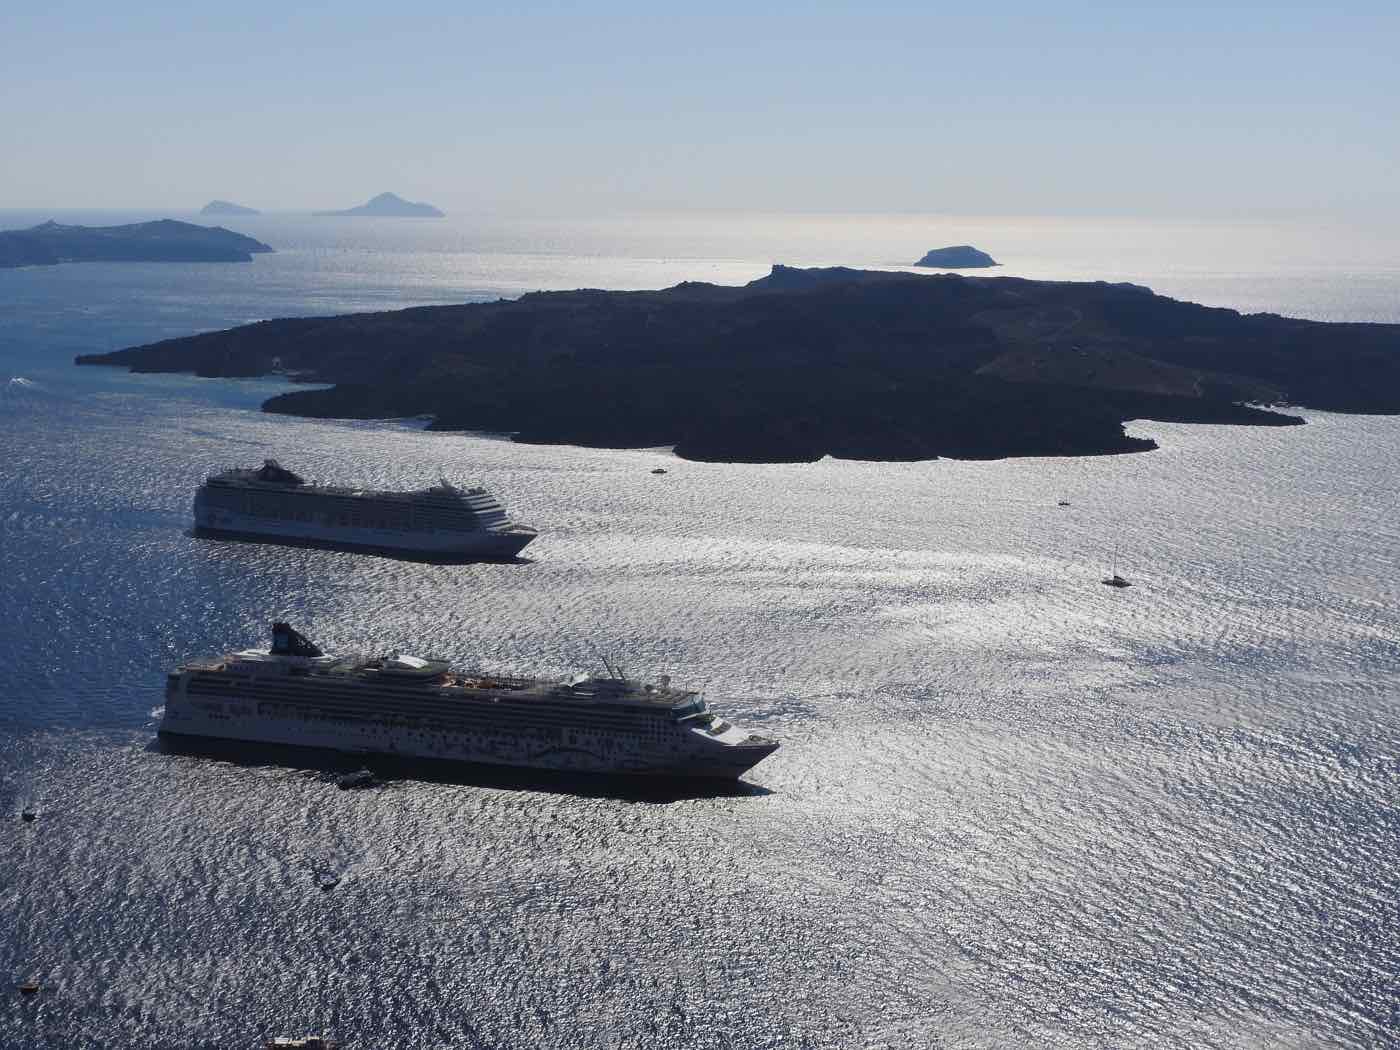 Cruise ships santorini